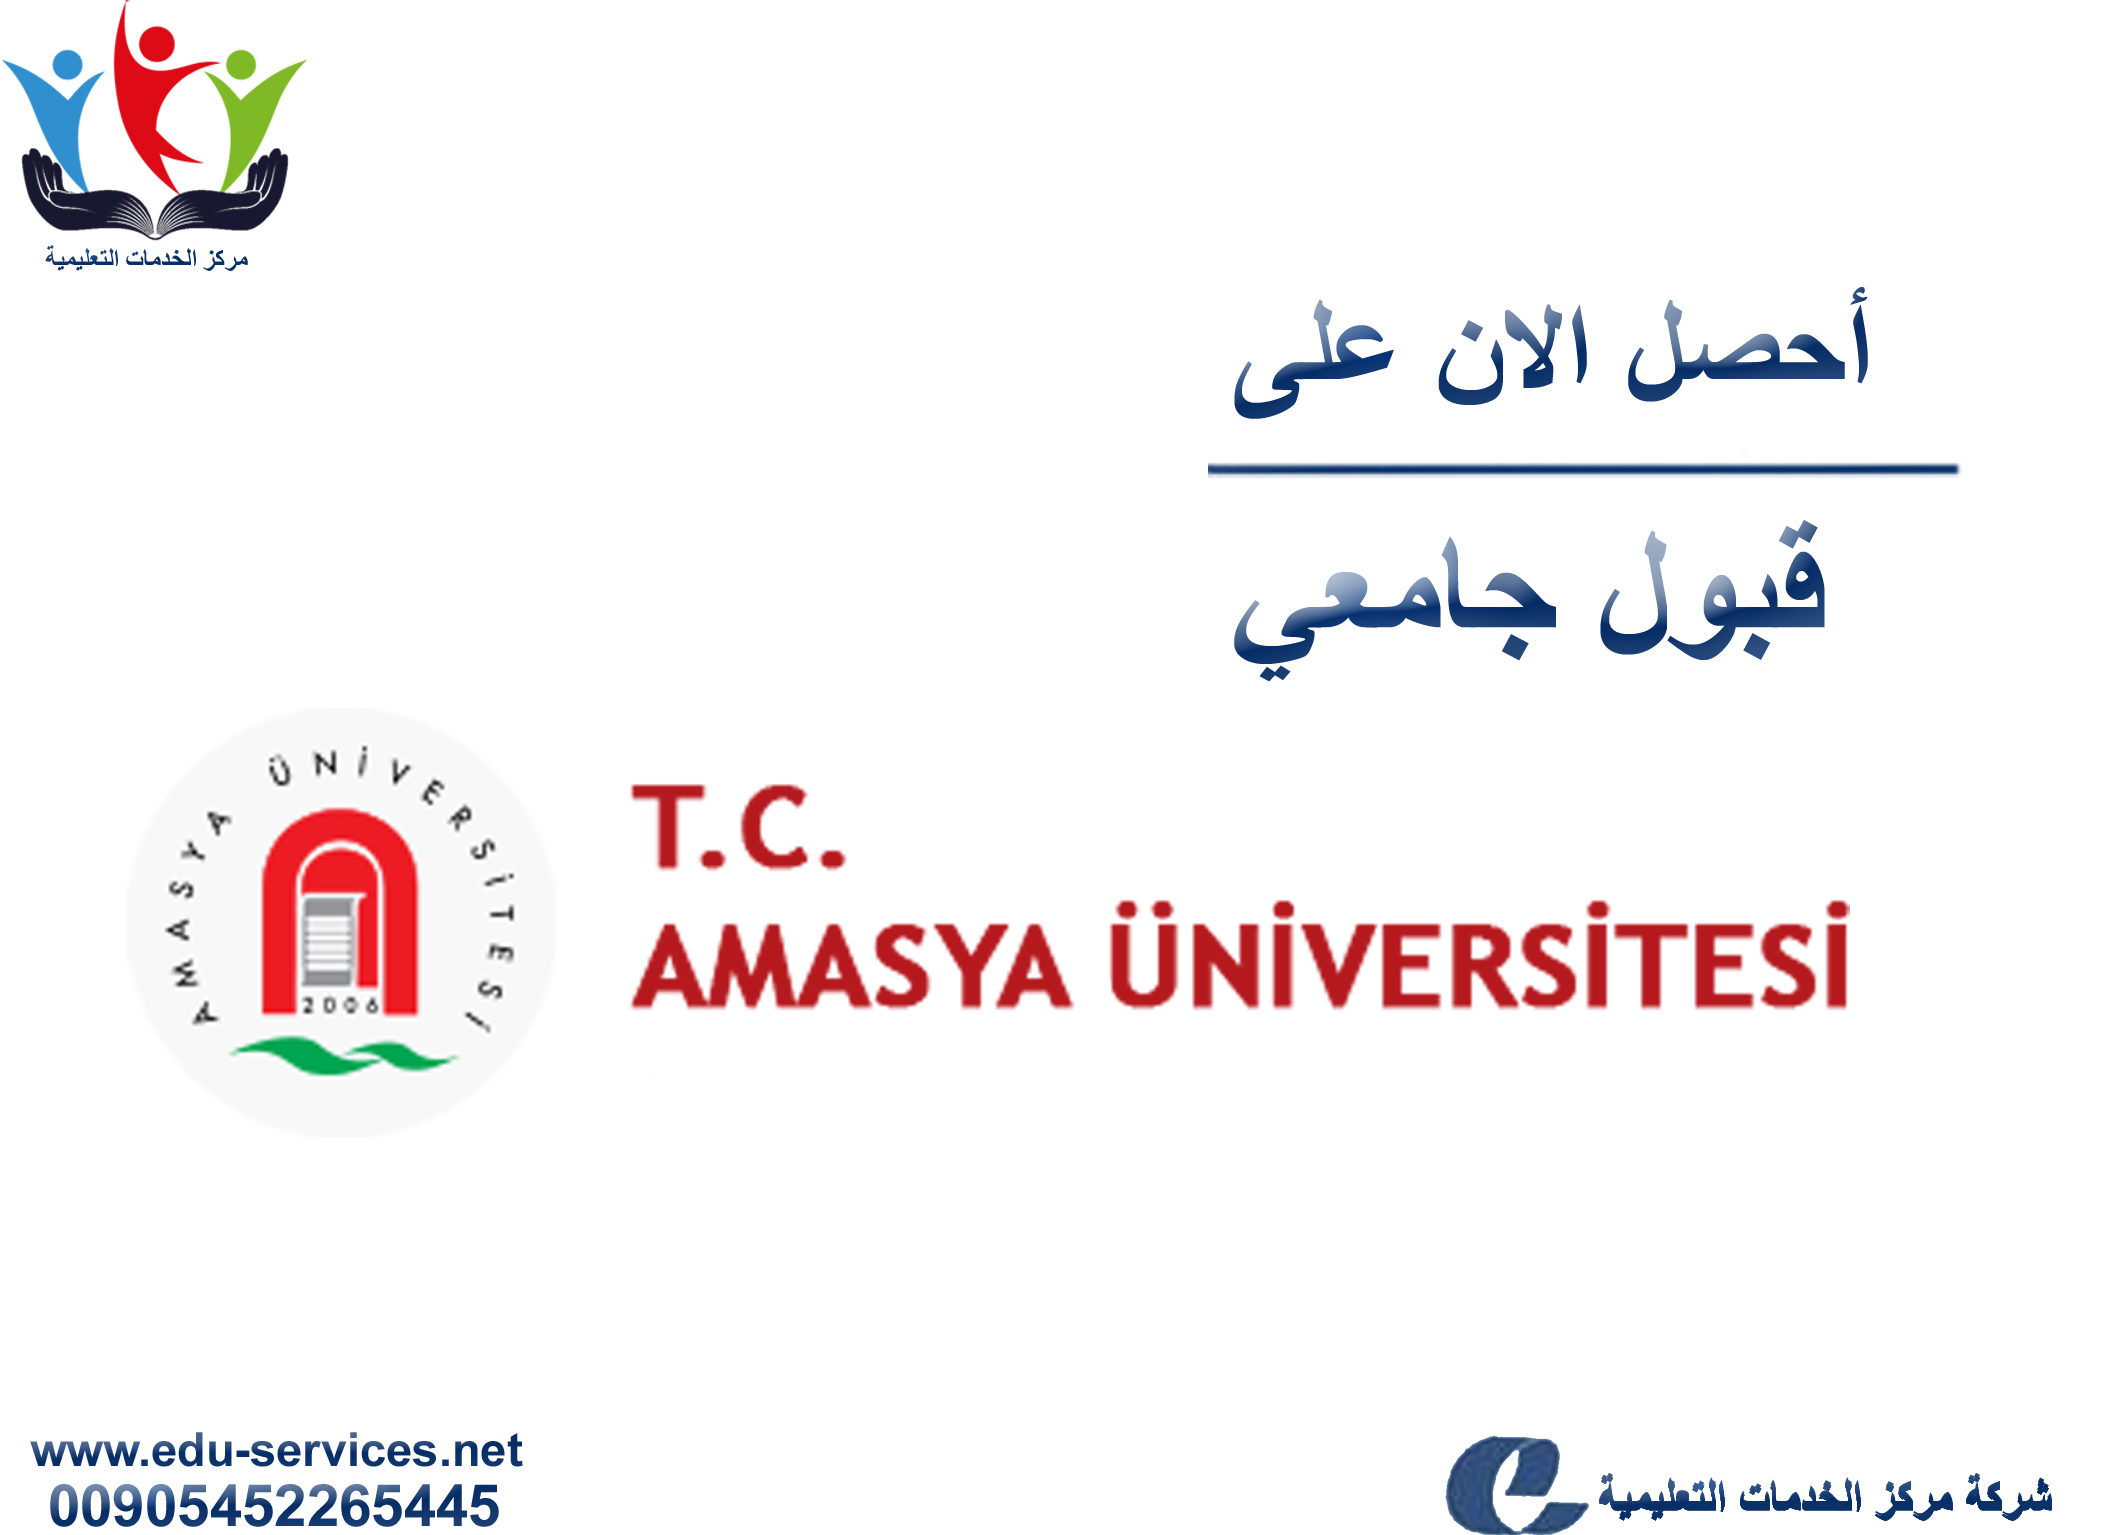 افتتاح التسجيل في جامعة اماسيا للعام 2018-2019